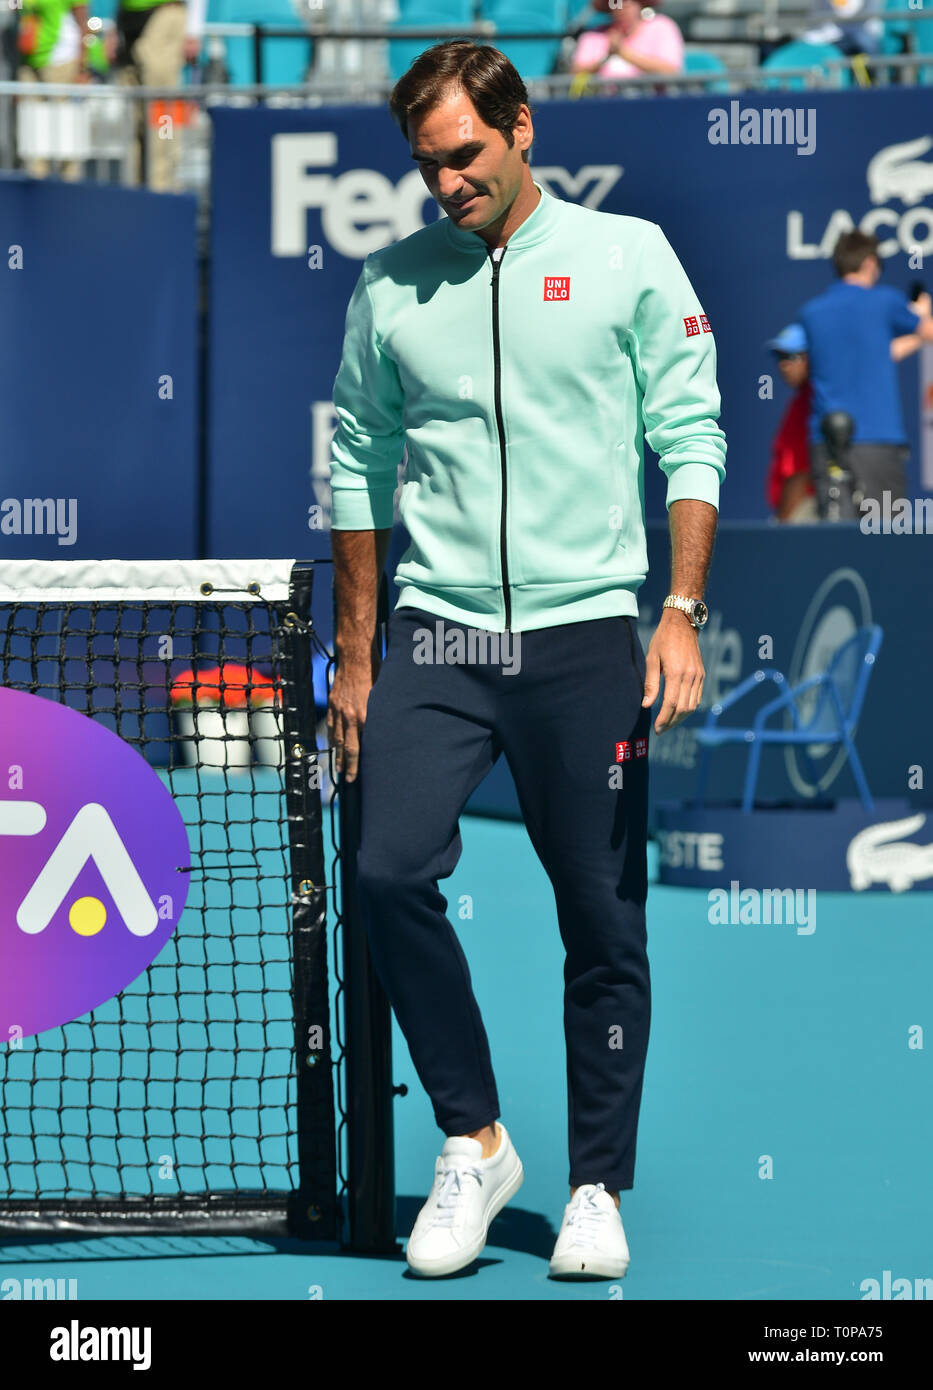 Miami Gardens, Florida, USA. 20 Mär, 2019. Roger Federer von der Schweiz während der Ribbon Cutting, bevor das erste Spiel der Miami Open Tag 3 im Hard Rock Stadion am 20. März 2019 in Miami, Florida. Quelle: MPI 10/Media Punch/Alamy leben Nachrichten Stockfoto